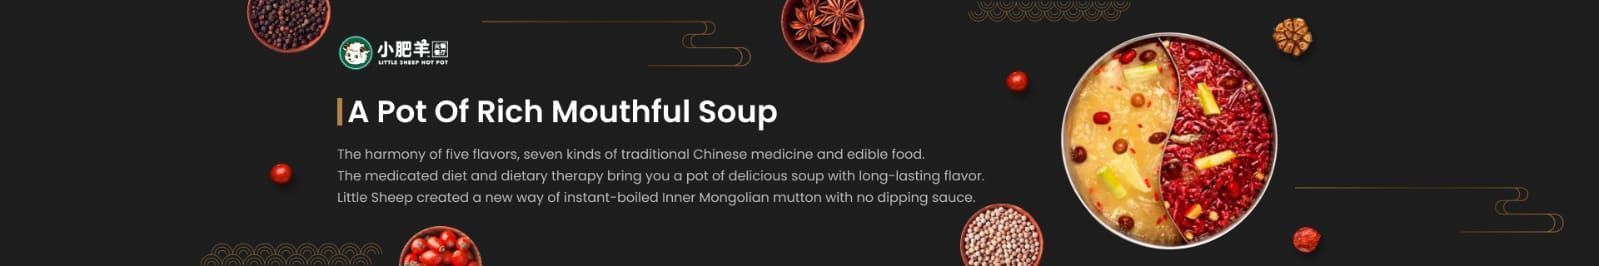 A pot of rich mouthful Soup (Food franchises)